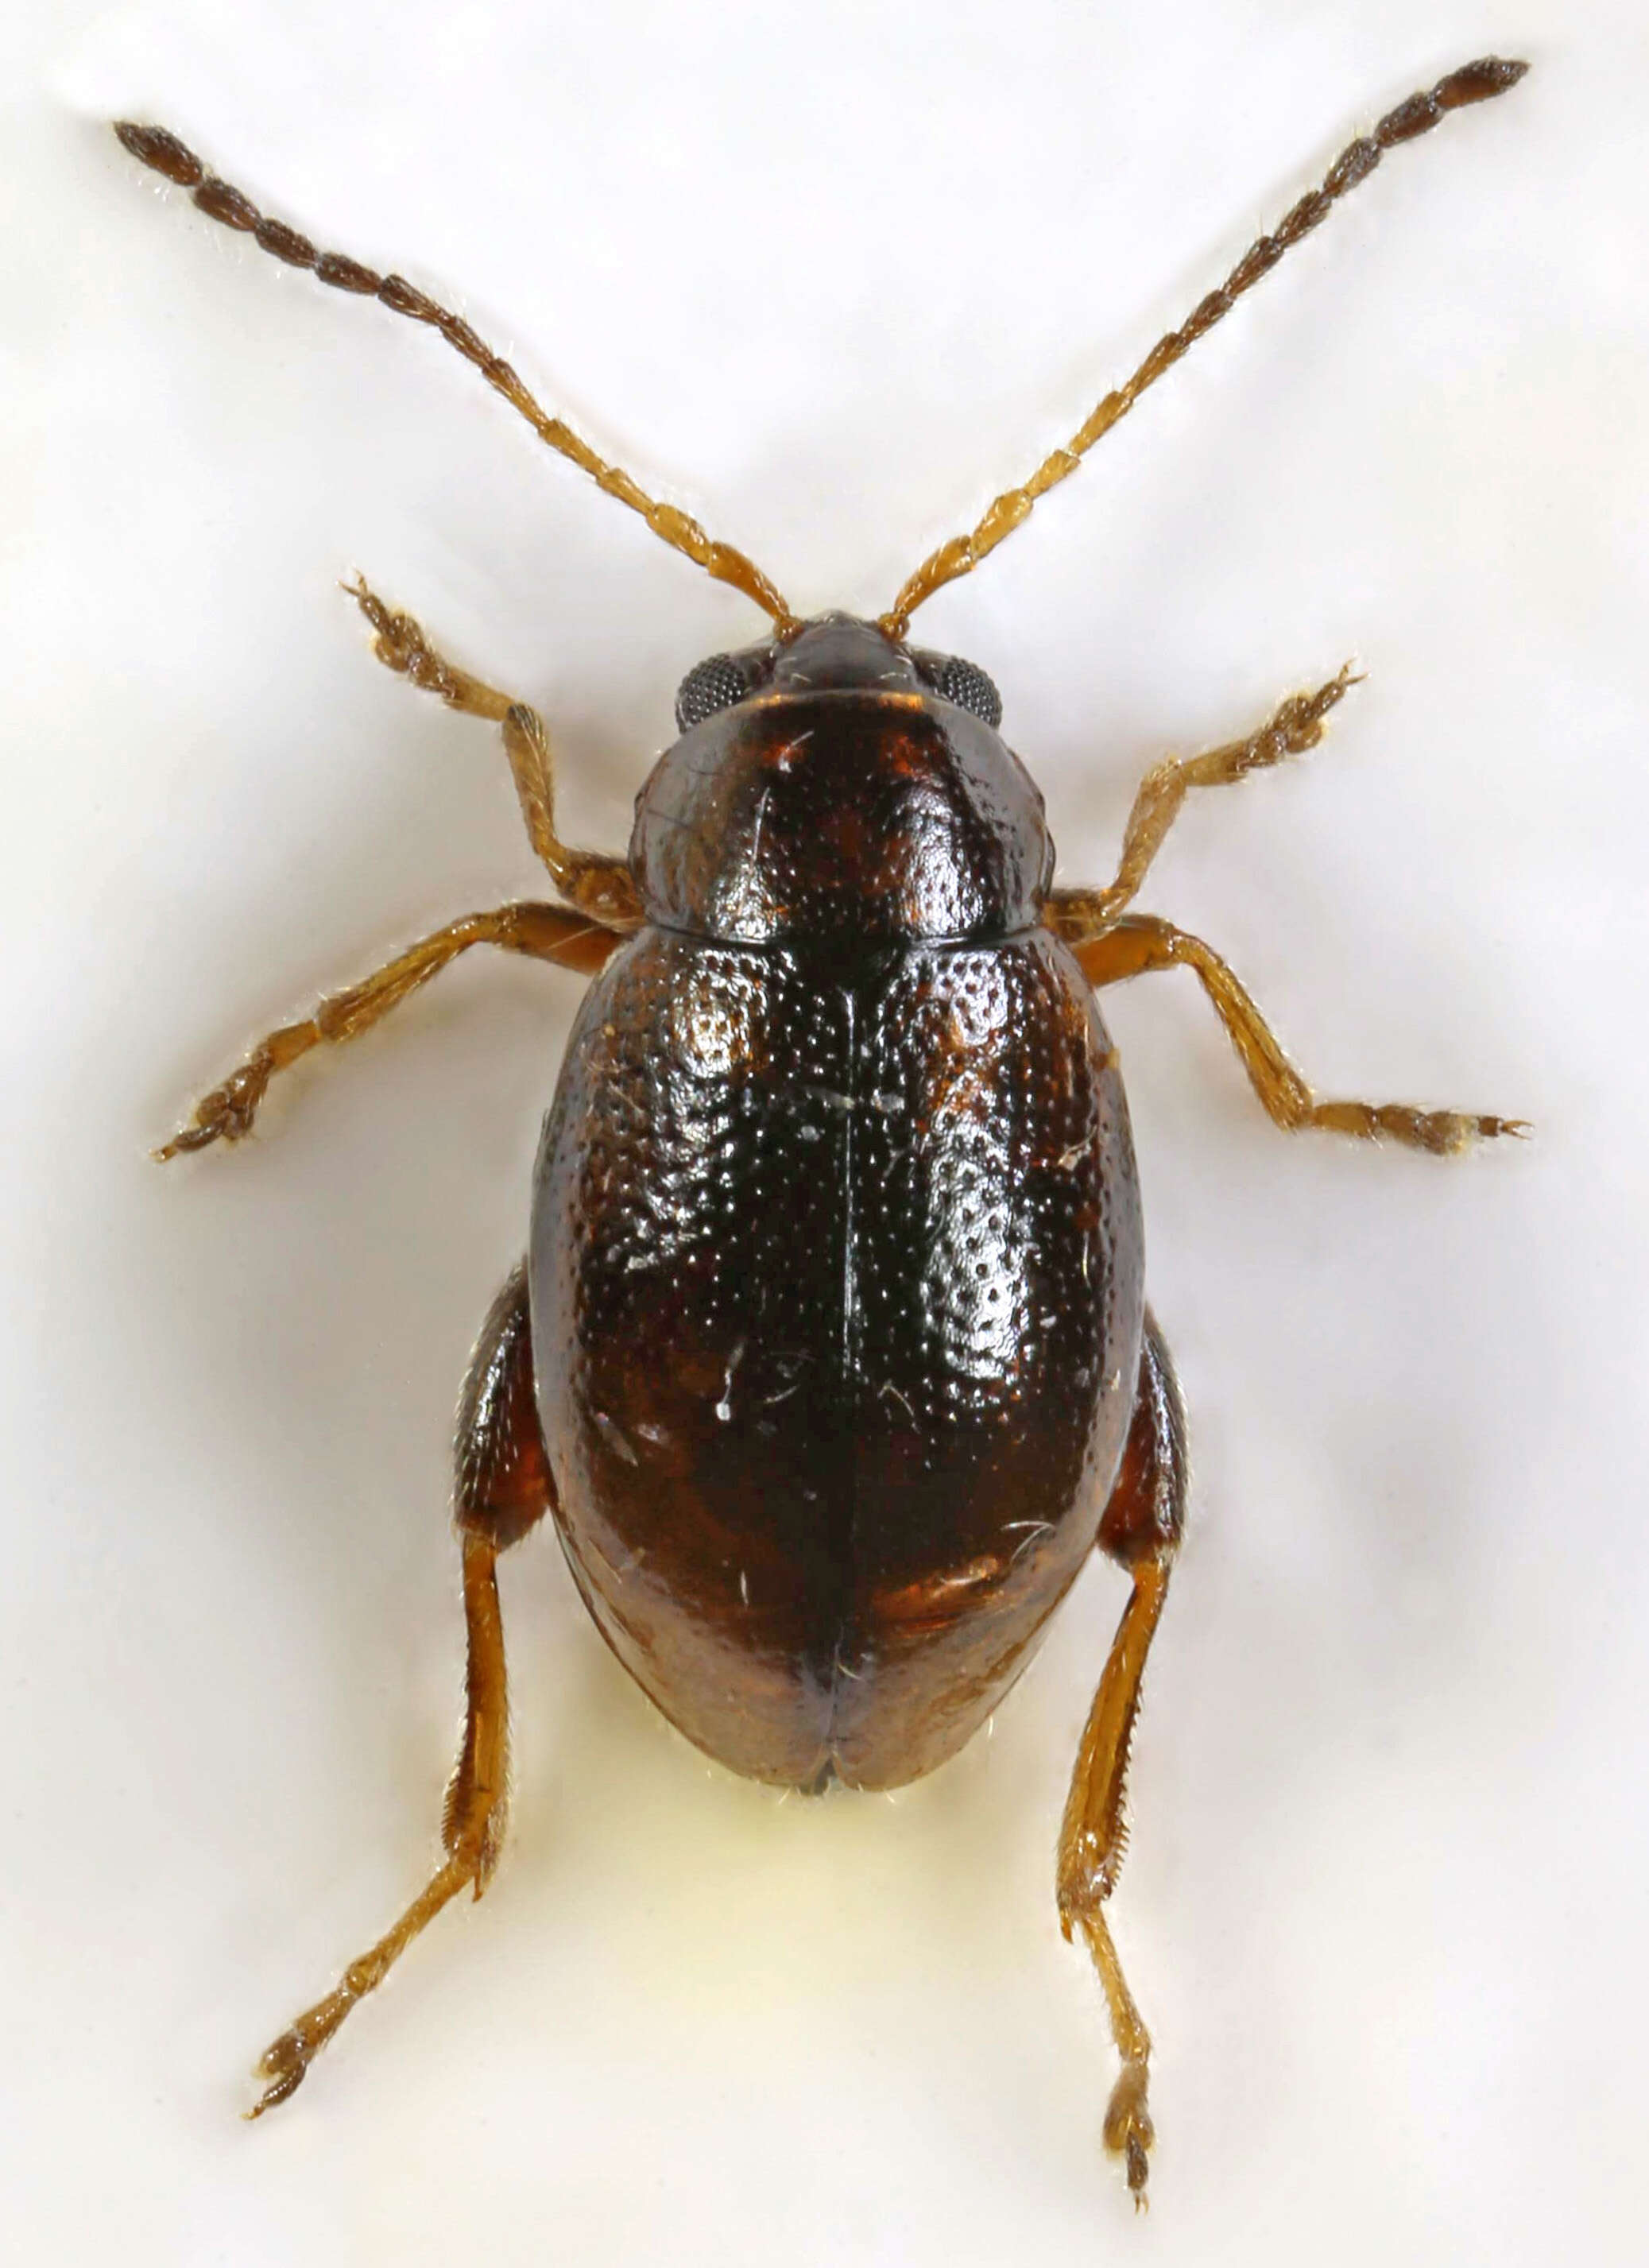 Image of Leaf beetle